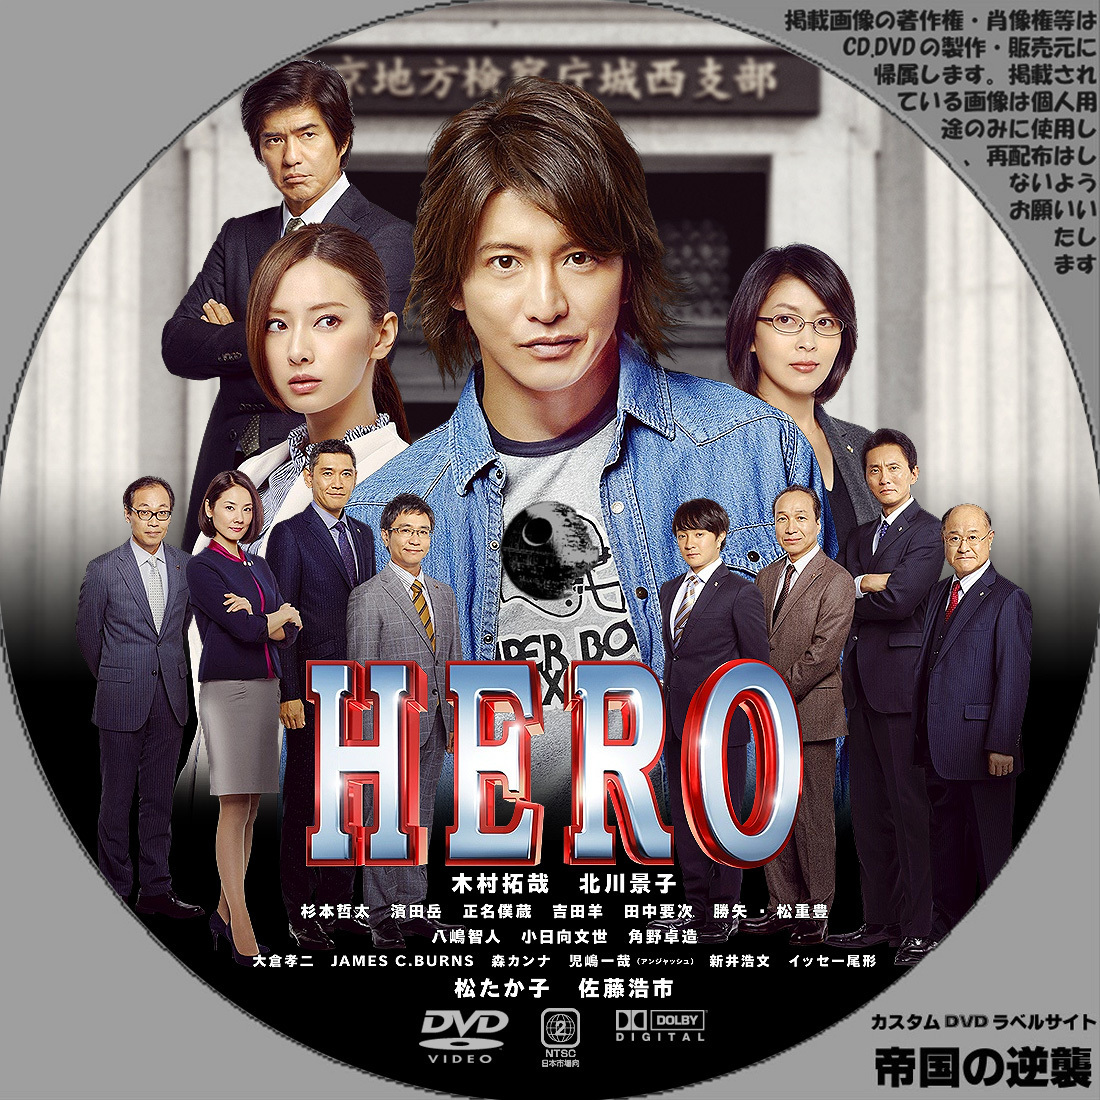 HERO ヒーロー DVDラベル: 新作映画のDVDラベル 続・帝国の逆襲